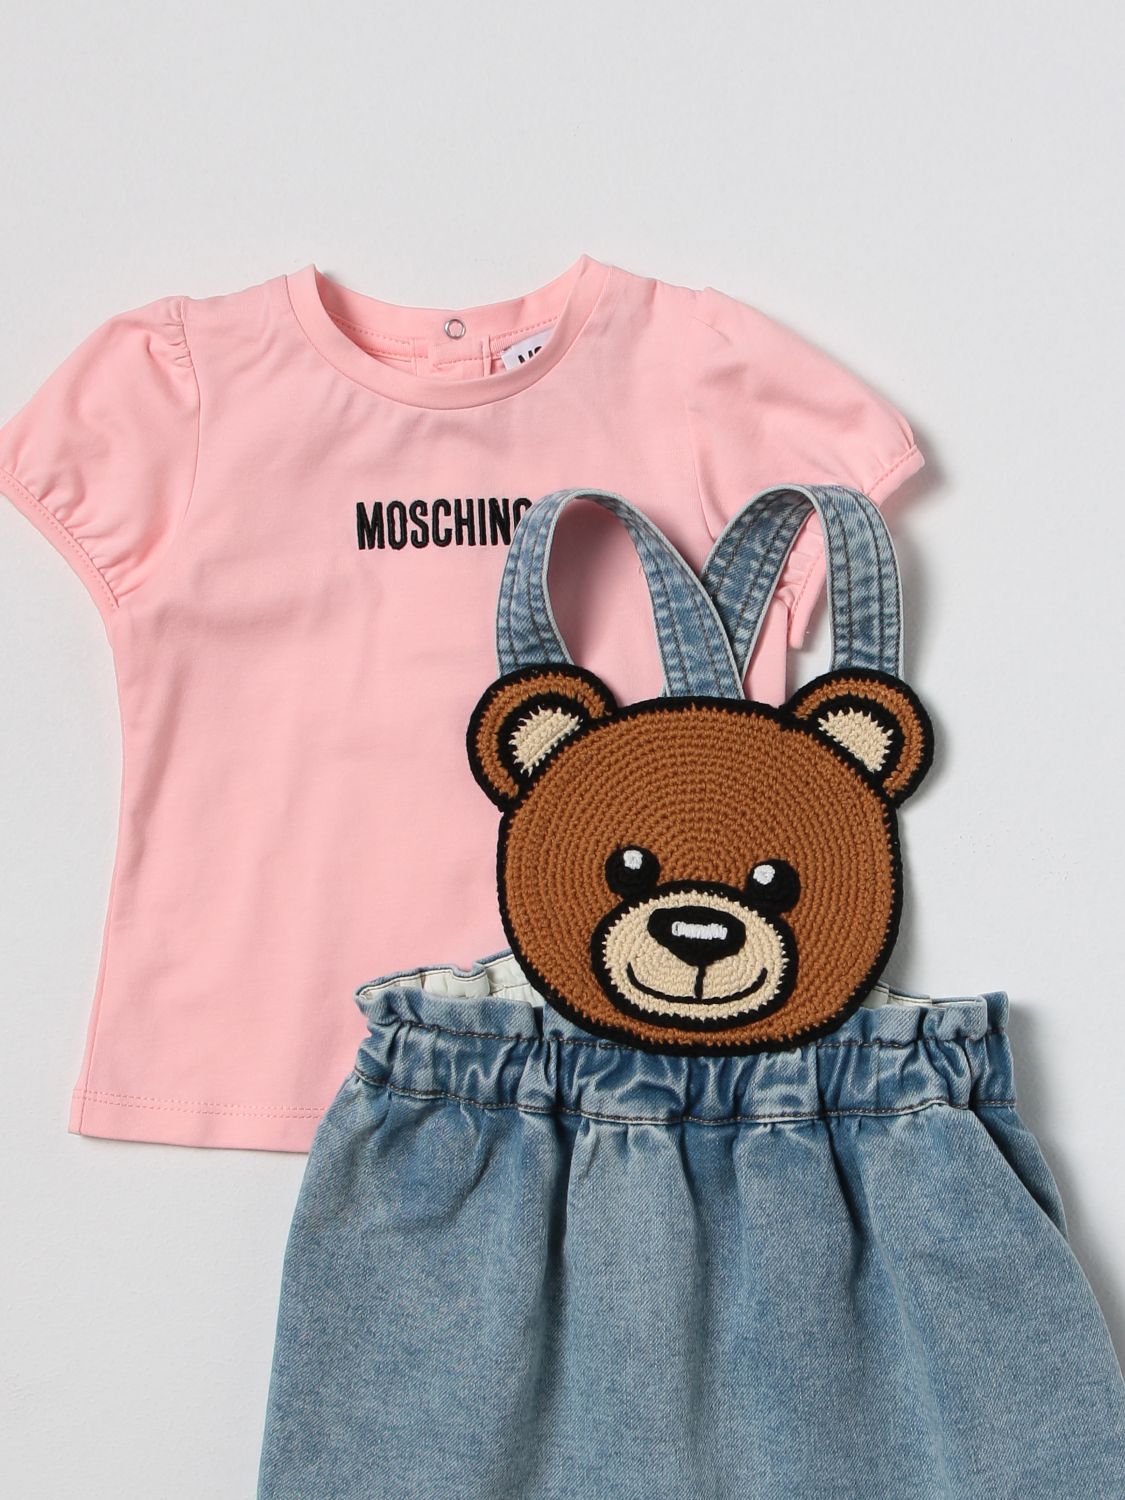 Nadenkend buitenaards wezen esthetisch MOSCHINO BABY: jumpsuit for baby - Pink | Moschino Baby jumpsuit  MDG00TLDE13 online on GIGLIO.COM